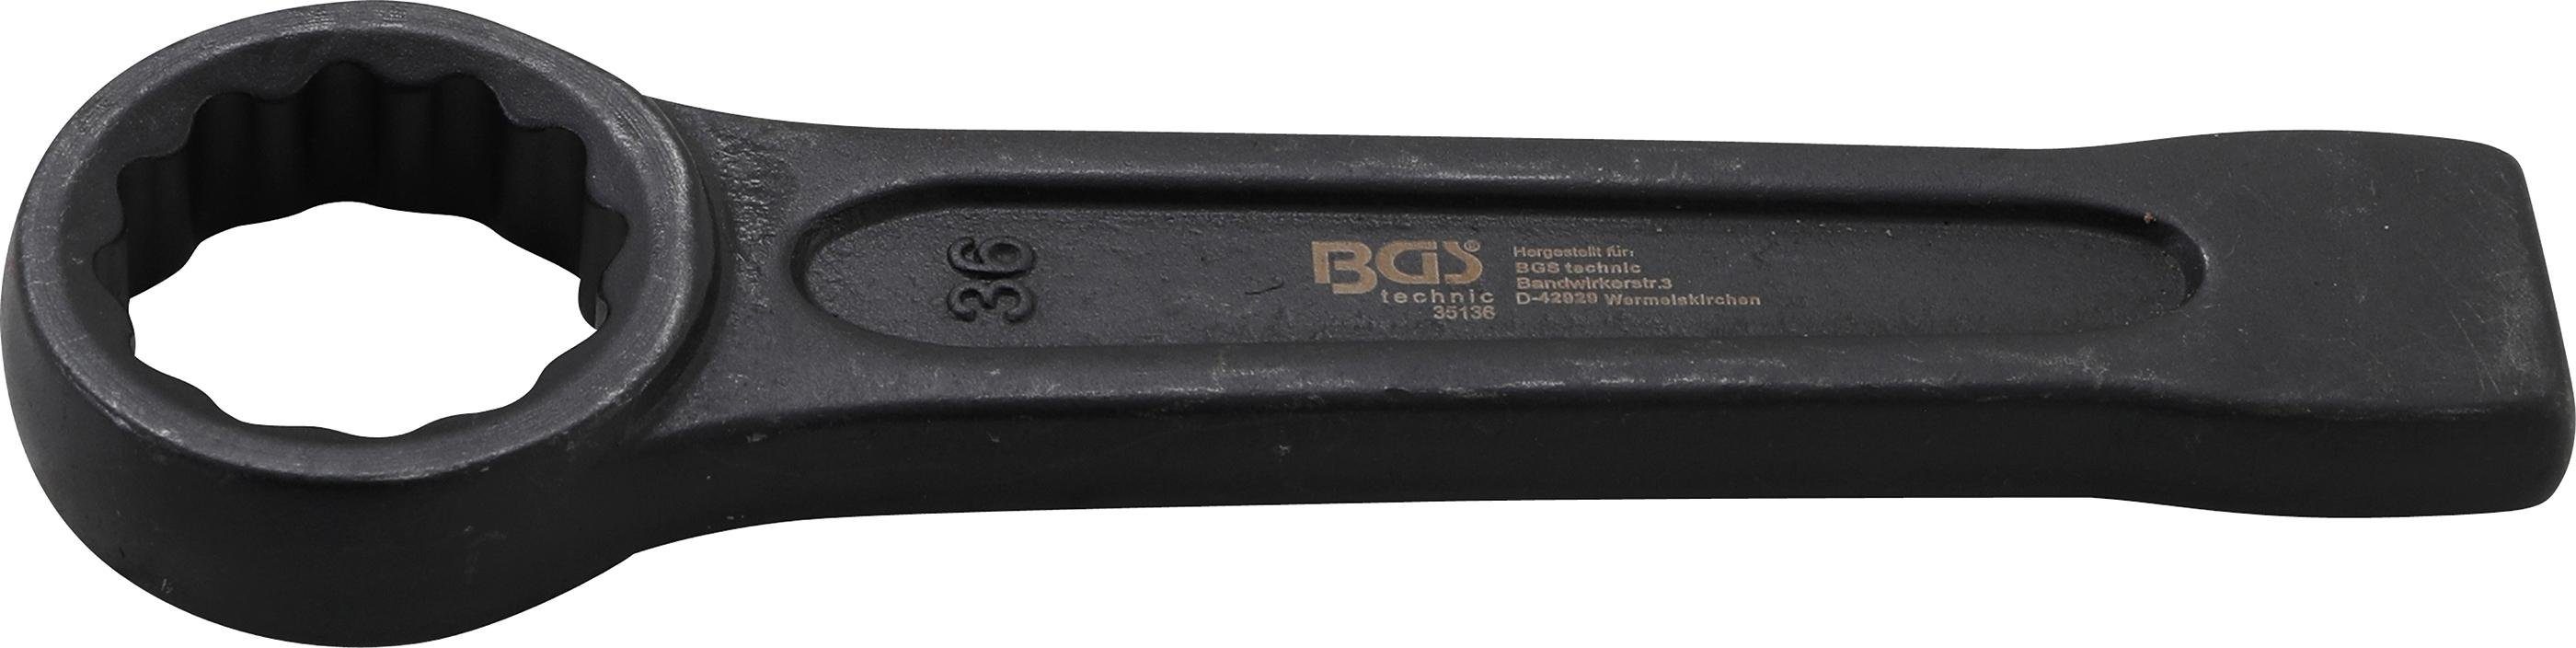 technic Schlag-Ringschlüssel, 36 mm BGS Ringschlüssel SW